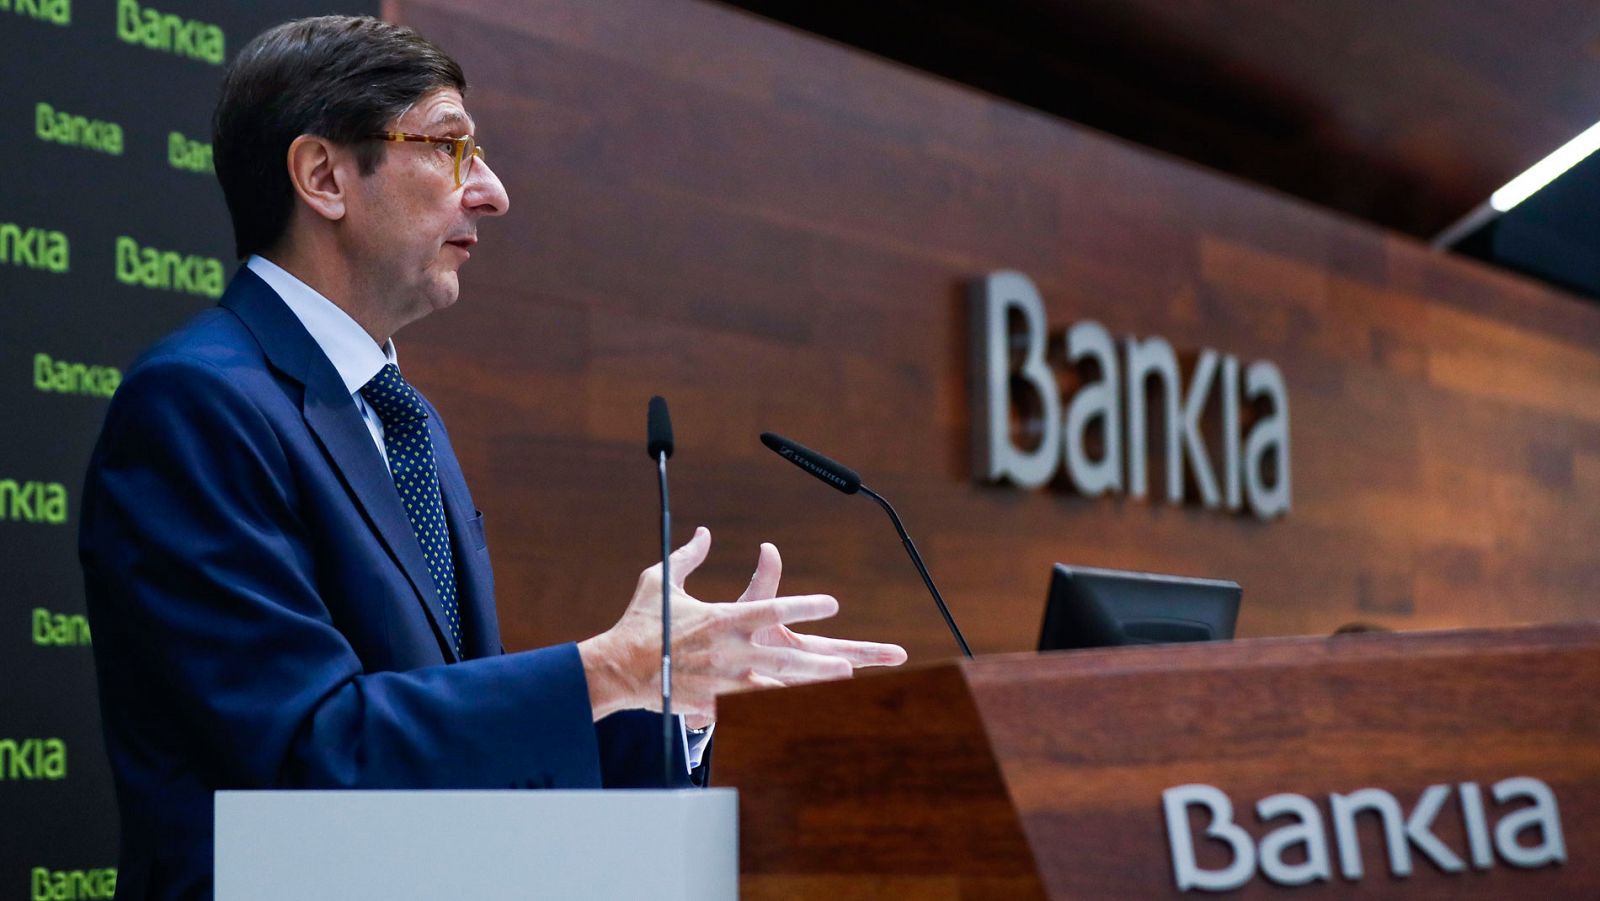 El presidente de Bankia, José Ignacio Goirigolzarri, en una imagen de archivo